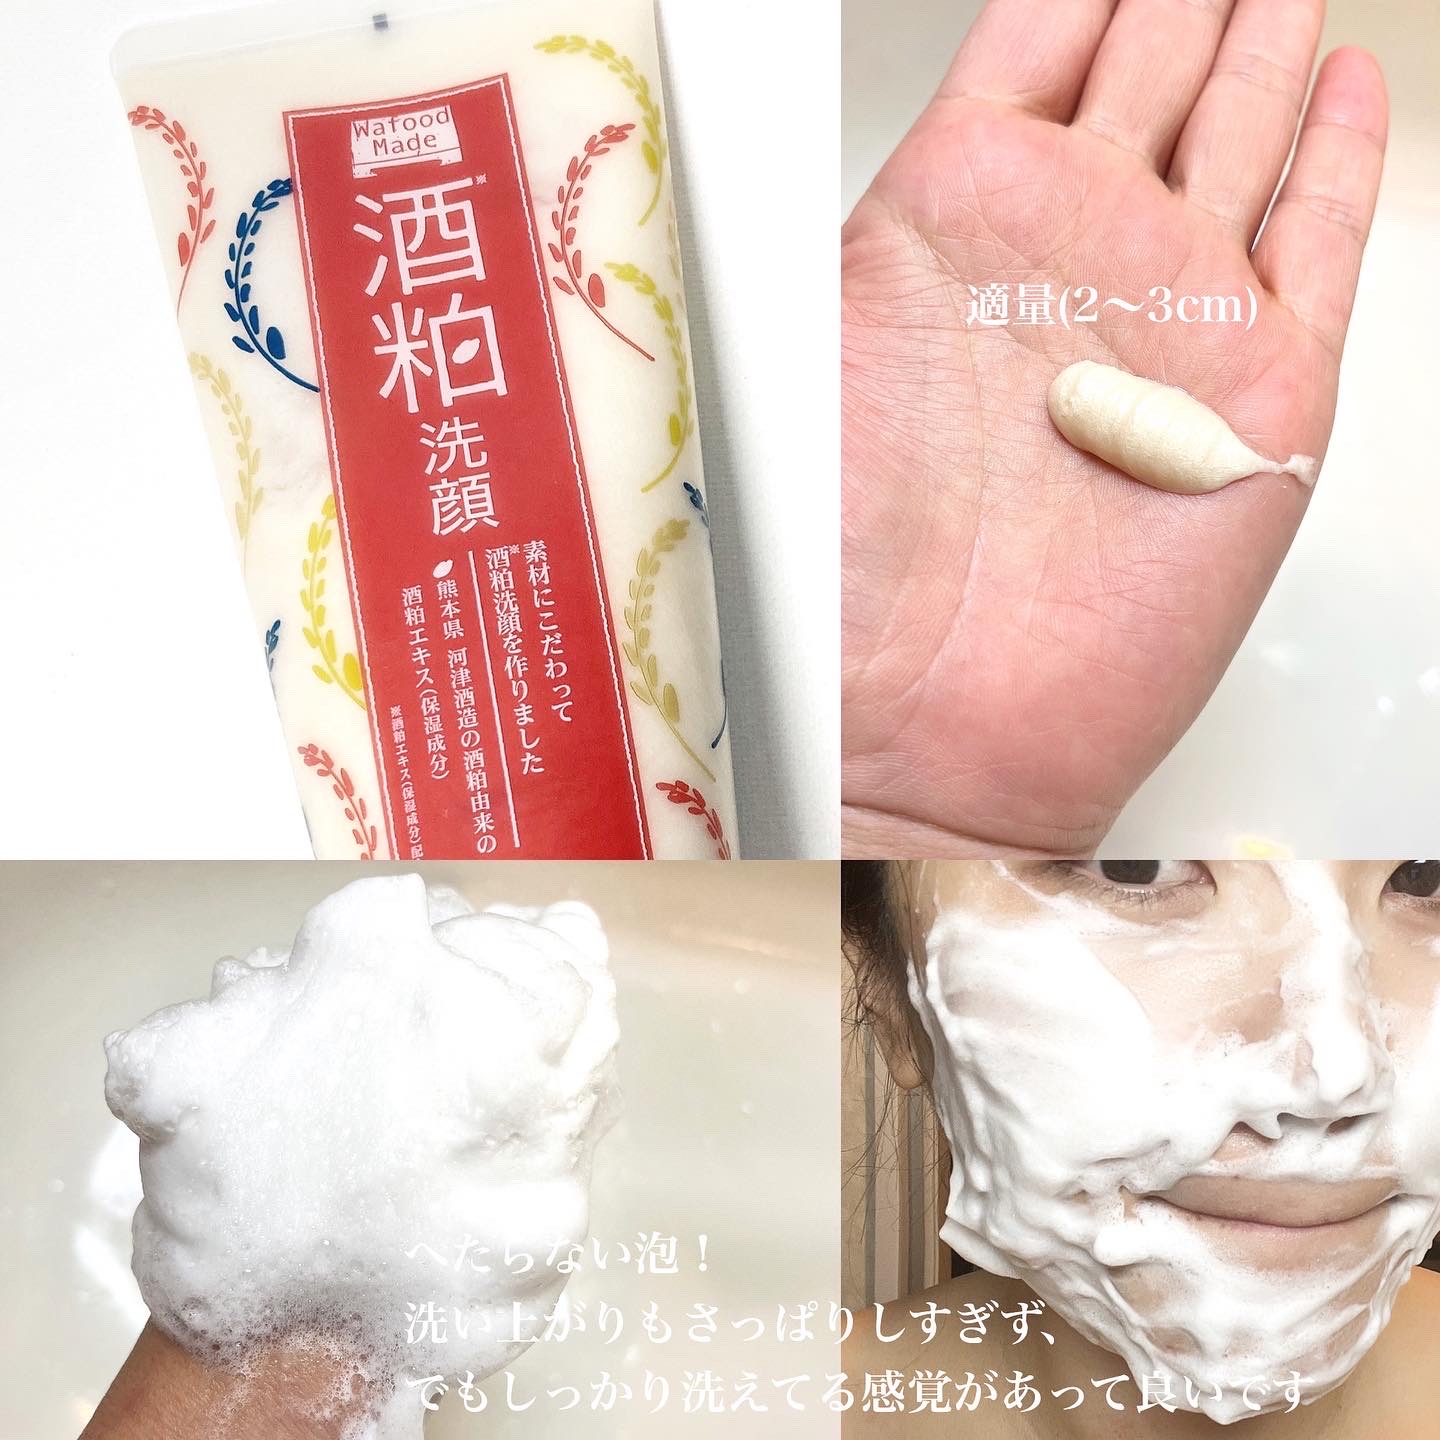 Pdc ワフードメイド 酒粕洗顔の口コミ写真 By Dorami1077さん 美容 化粧品情報はアットコスメ